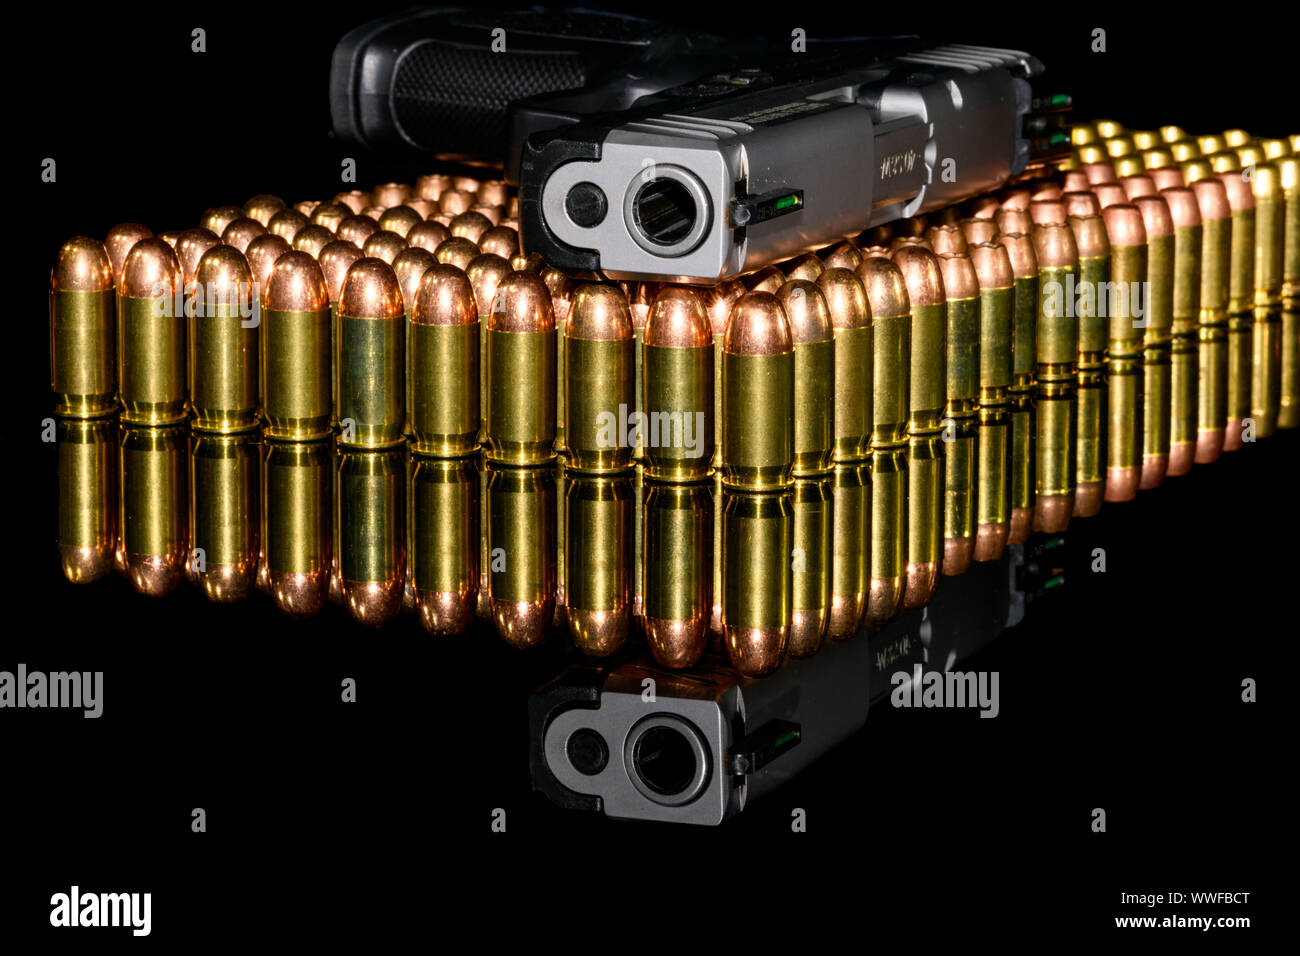 Pistolet semi-automatique sur les rangées de munitions, de munitions sur fond noir et de réflexion Banque D'Images